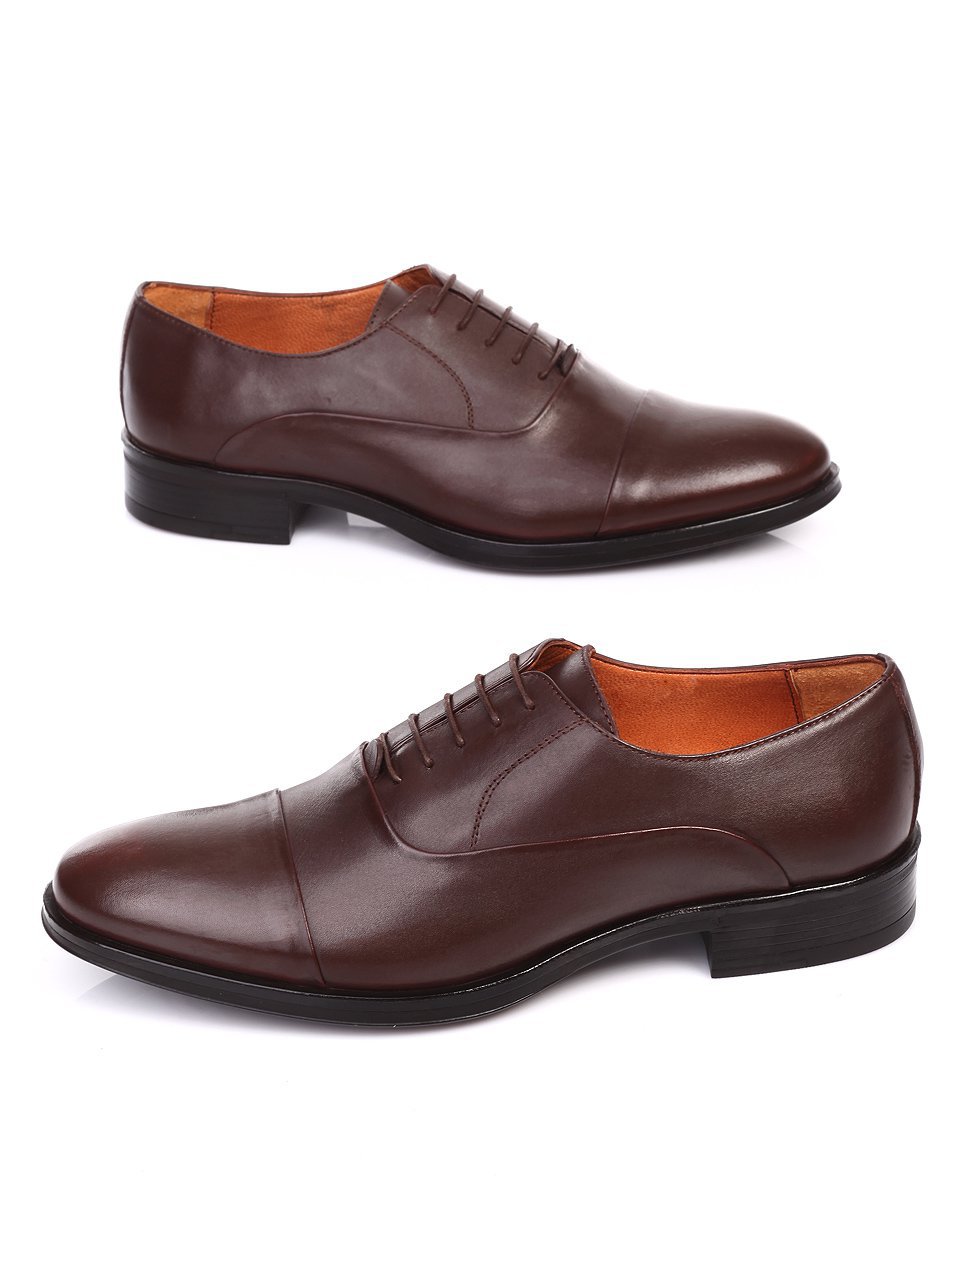 Официални мъжки обувки от естествена кожа в кафяво 7AT-16895 brown